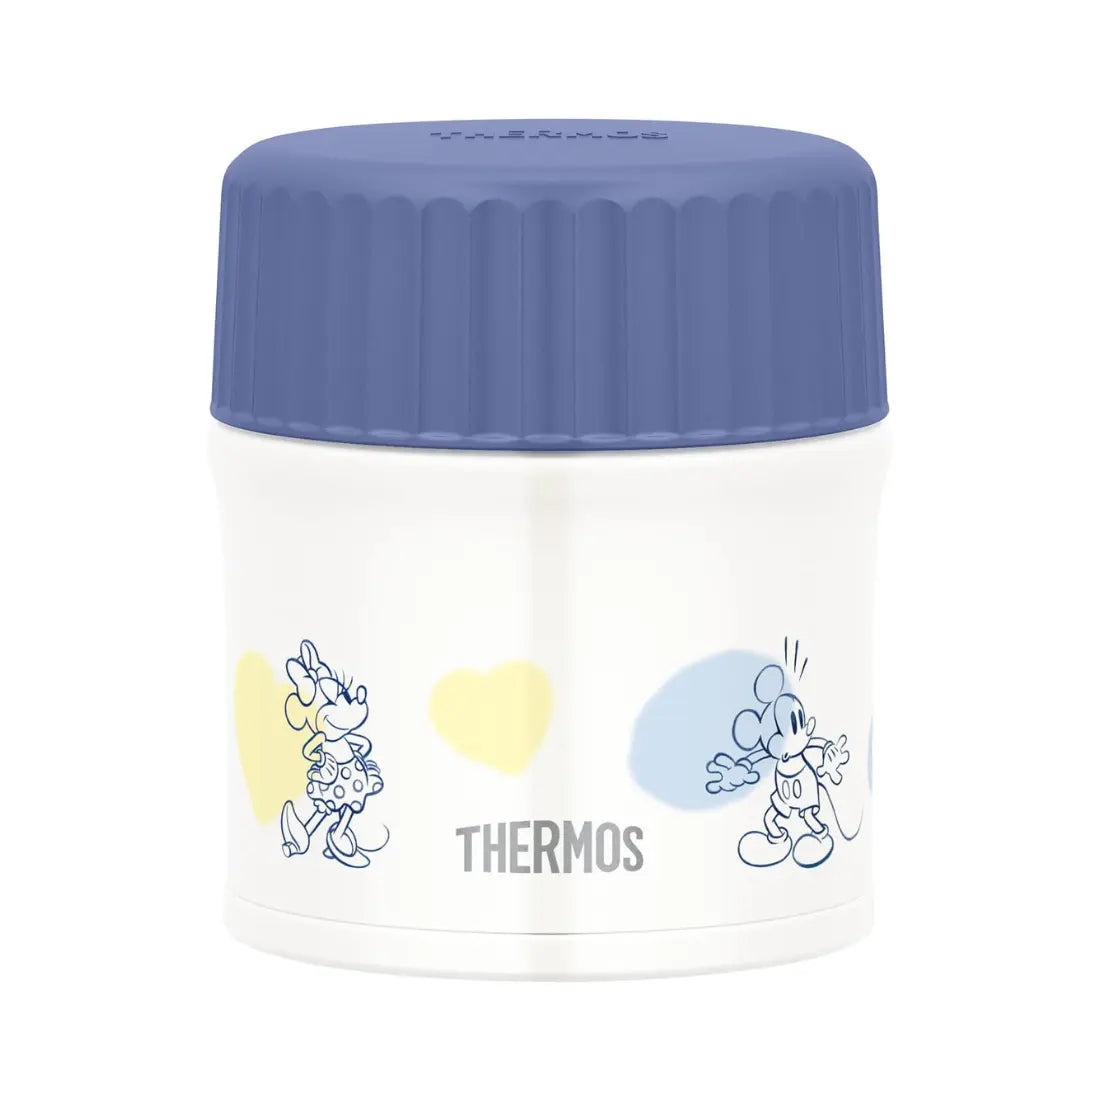 Thermos 抗菌焖烧保温饭盒+汤罐 (冷热) 300ml - 蓝色